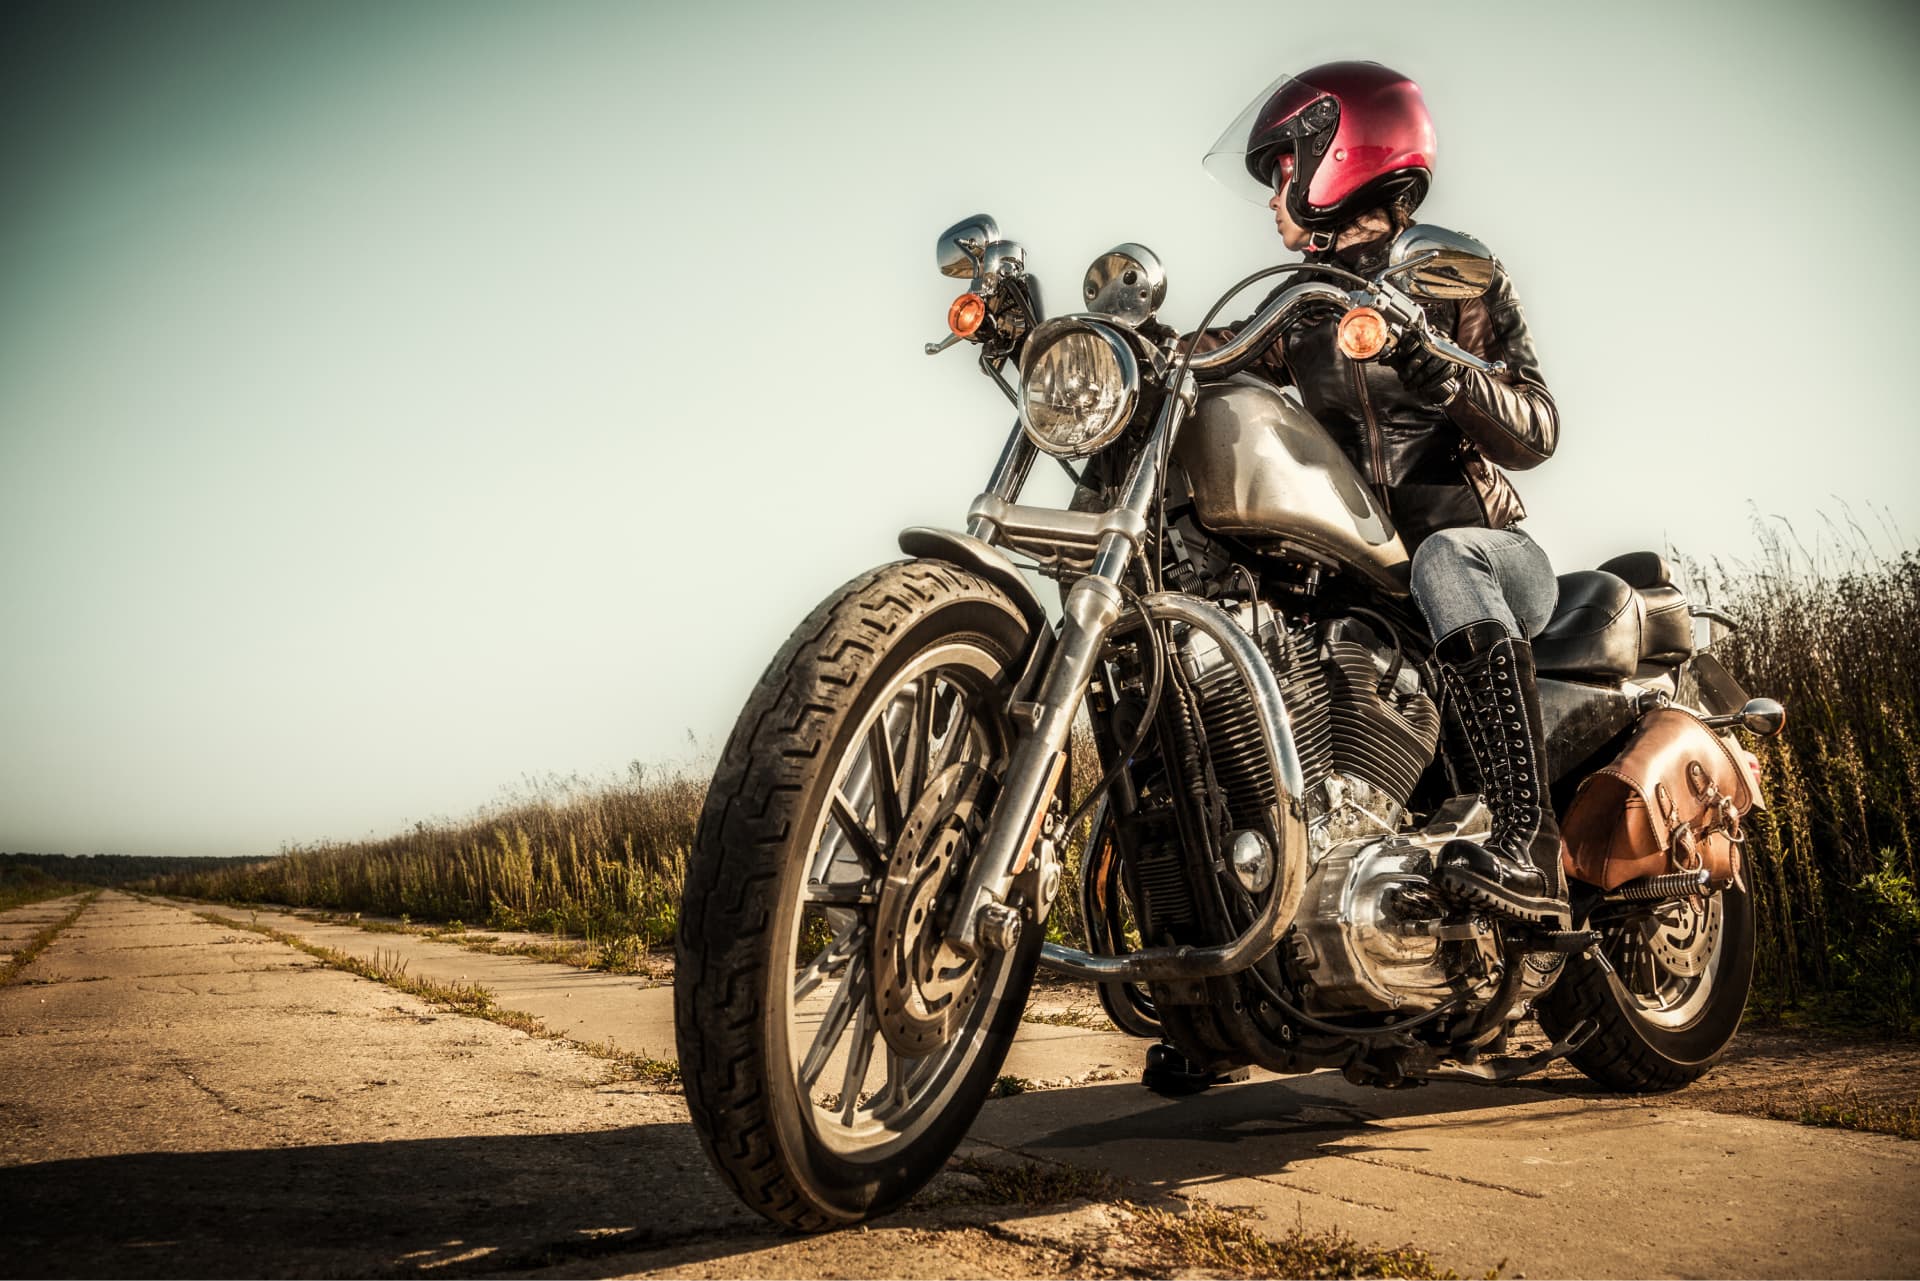 Requisitos de un casco de moto: ¿Cuál elegir?